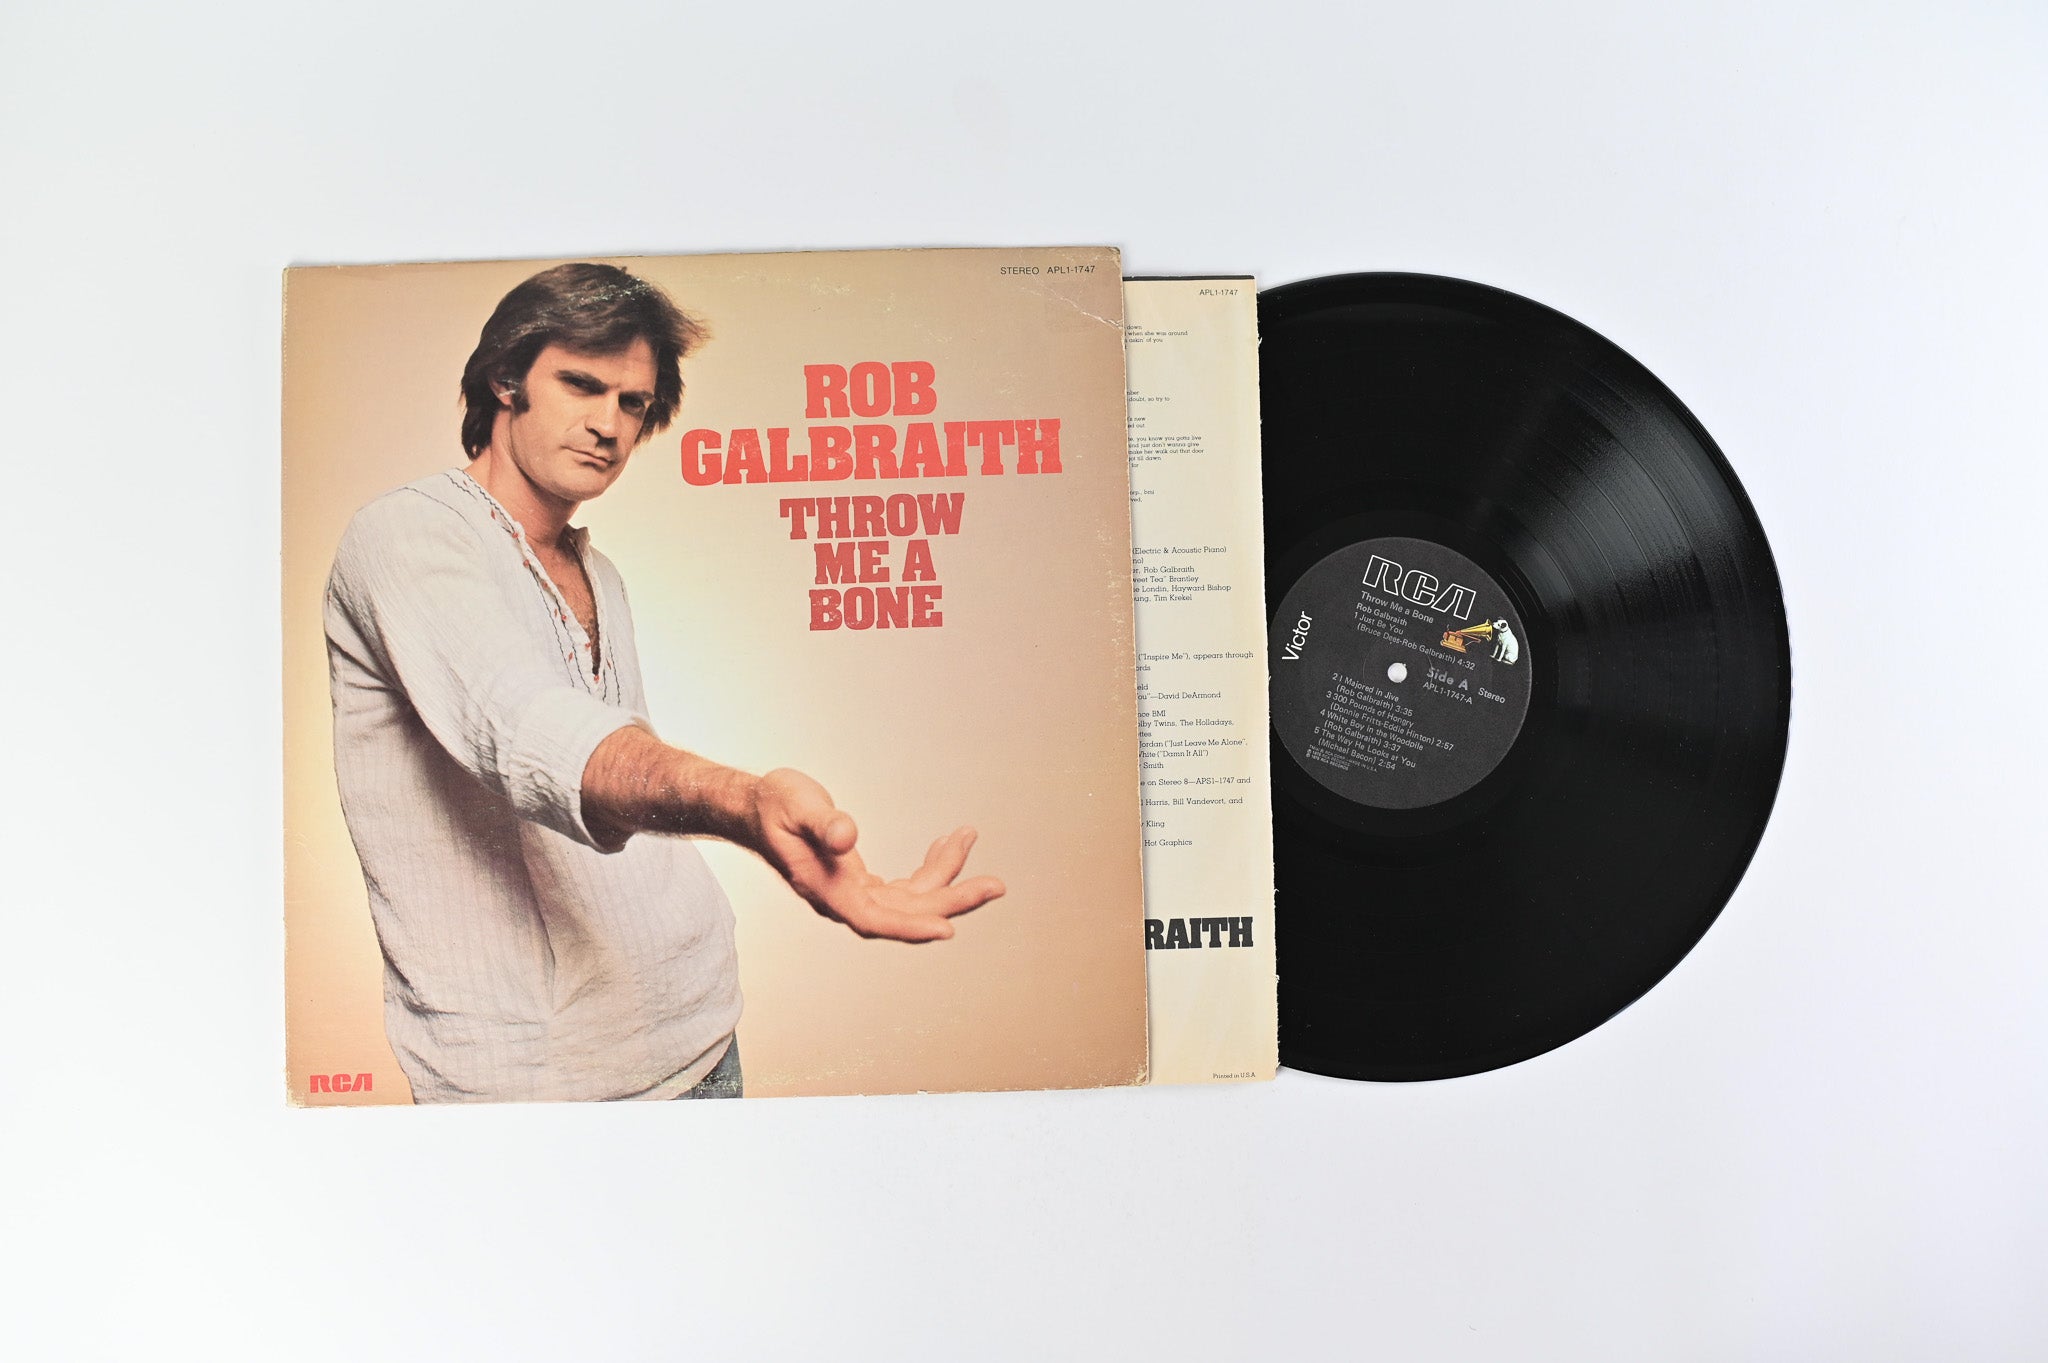 Rob Galbraith - Throw Me A Bone on RCA